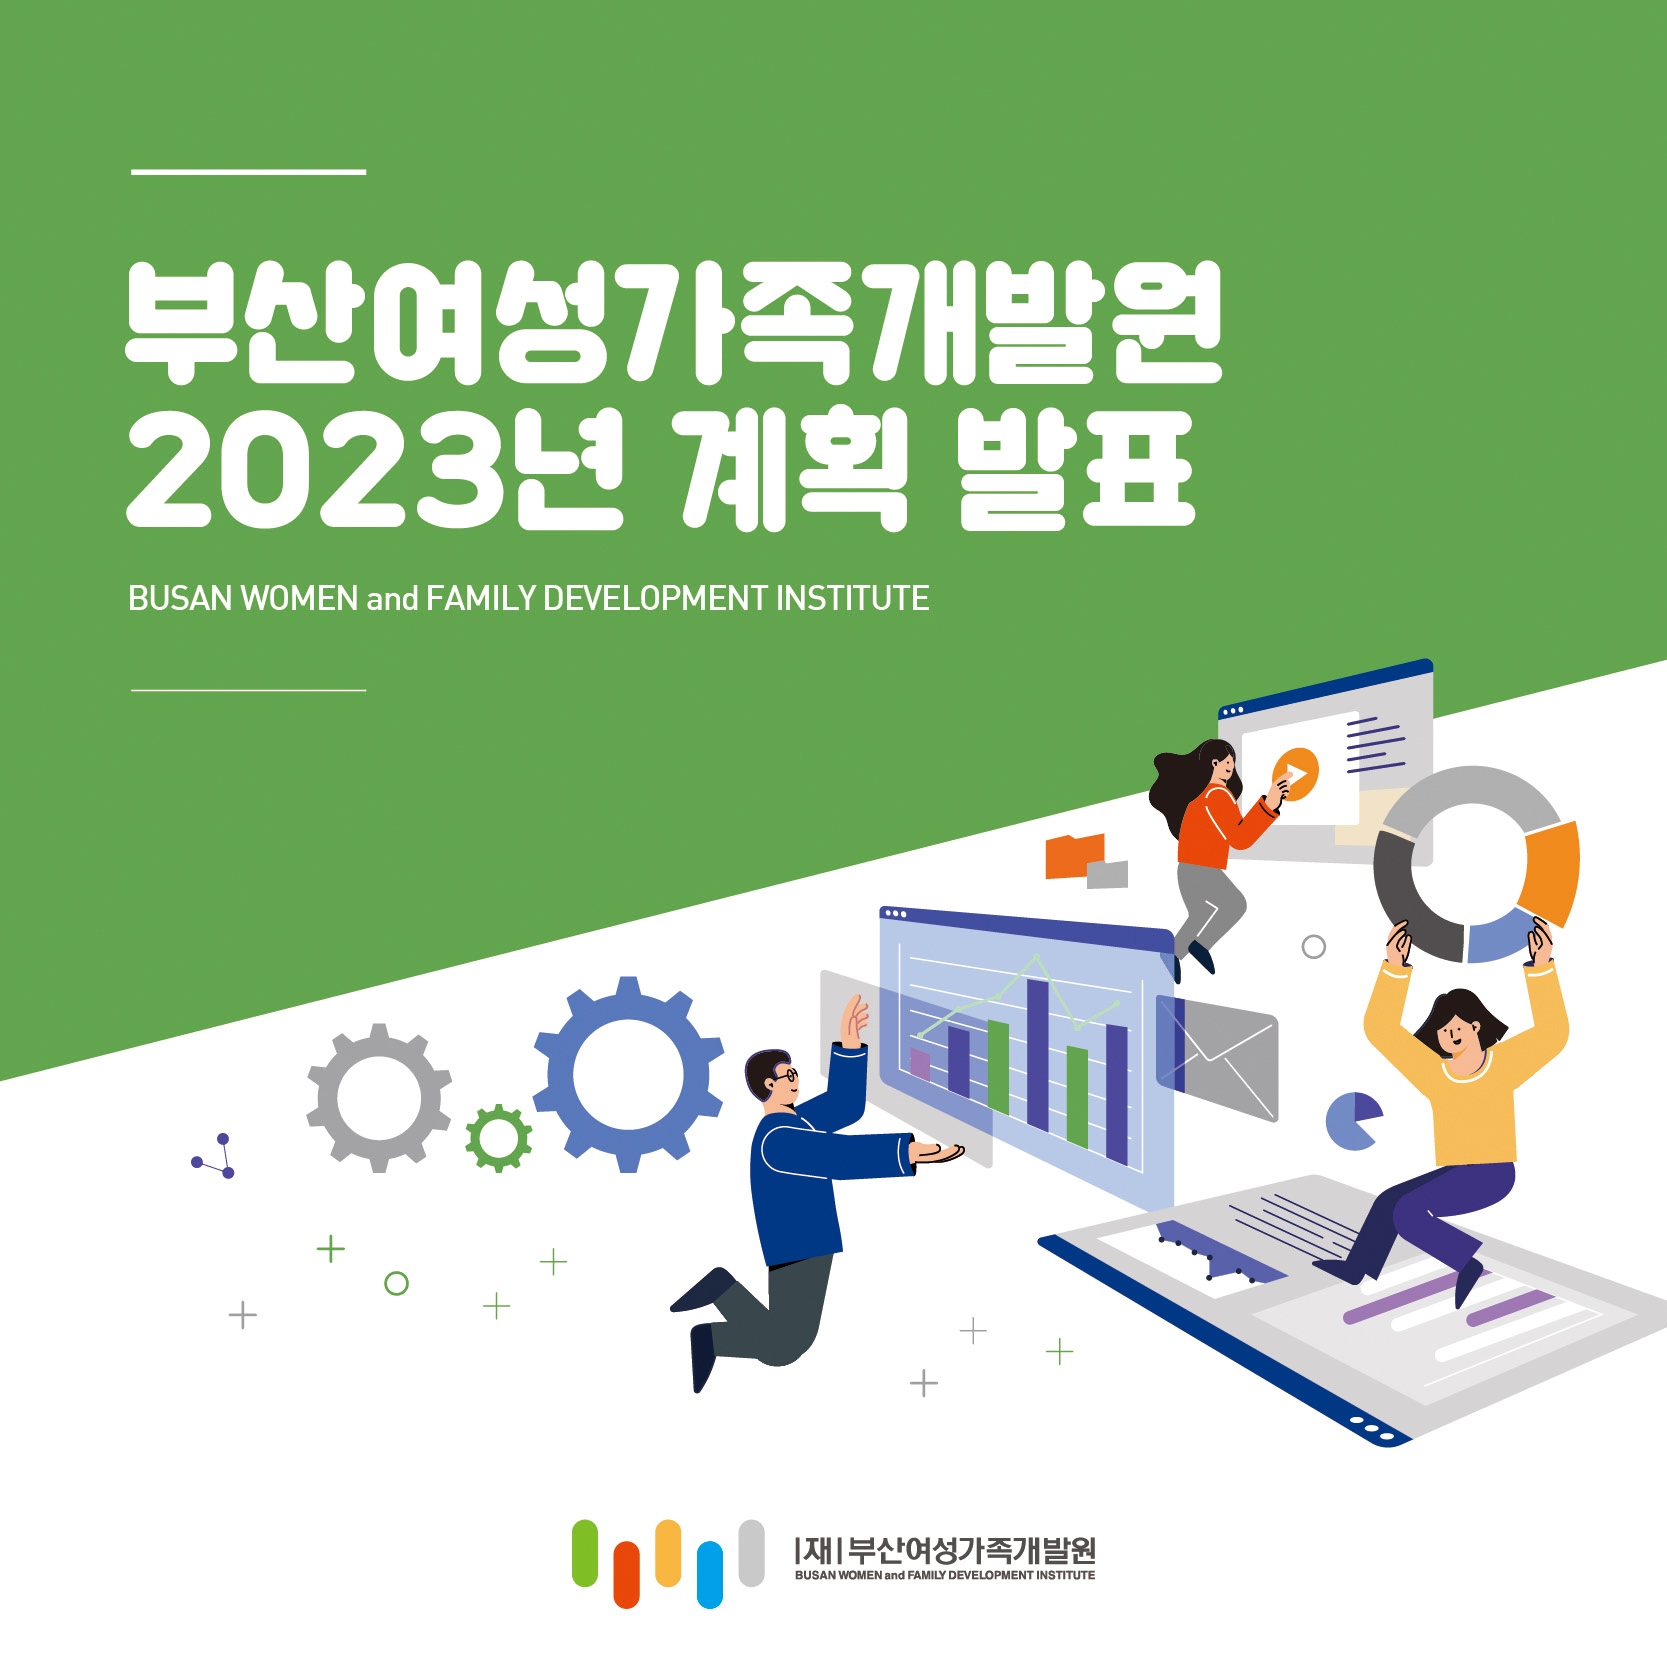 2023년 부산여성가족개발원 계획 발표 카드뉴스